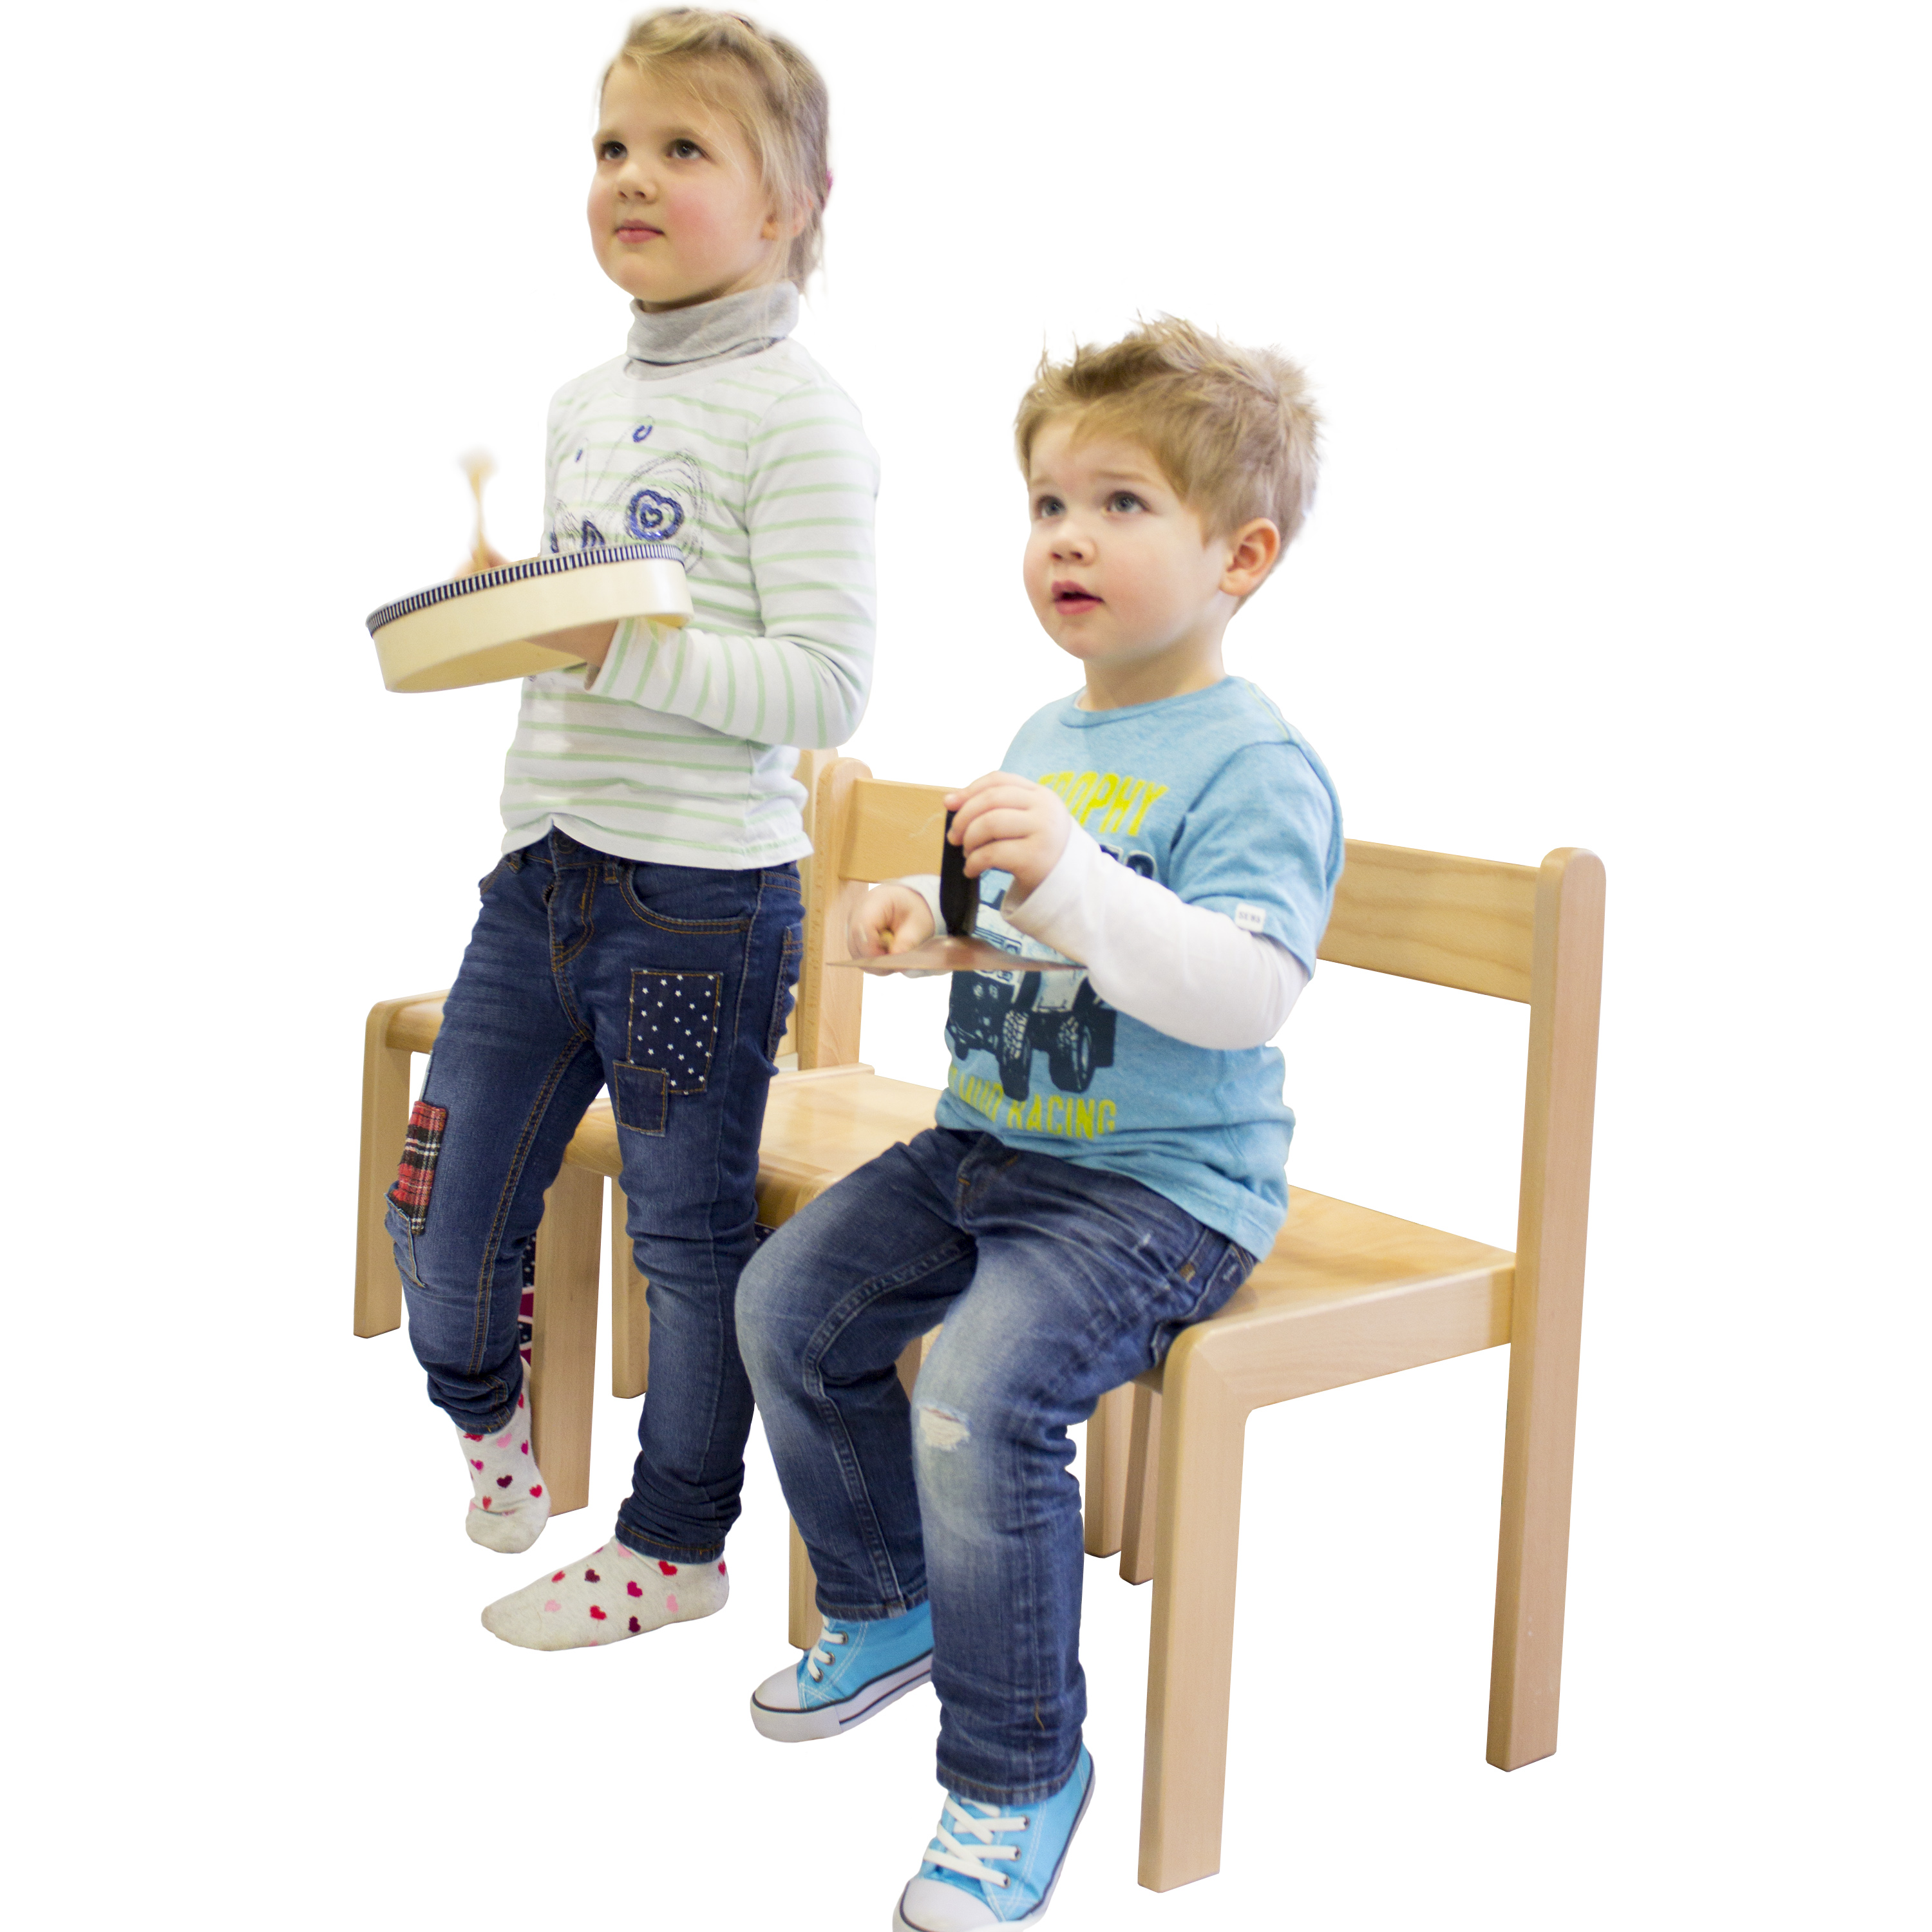 Kindergartenstuhl 'JANNIS', stapelbar, Sitzhöhe 35 cm